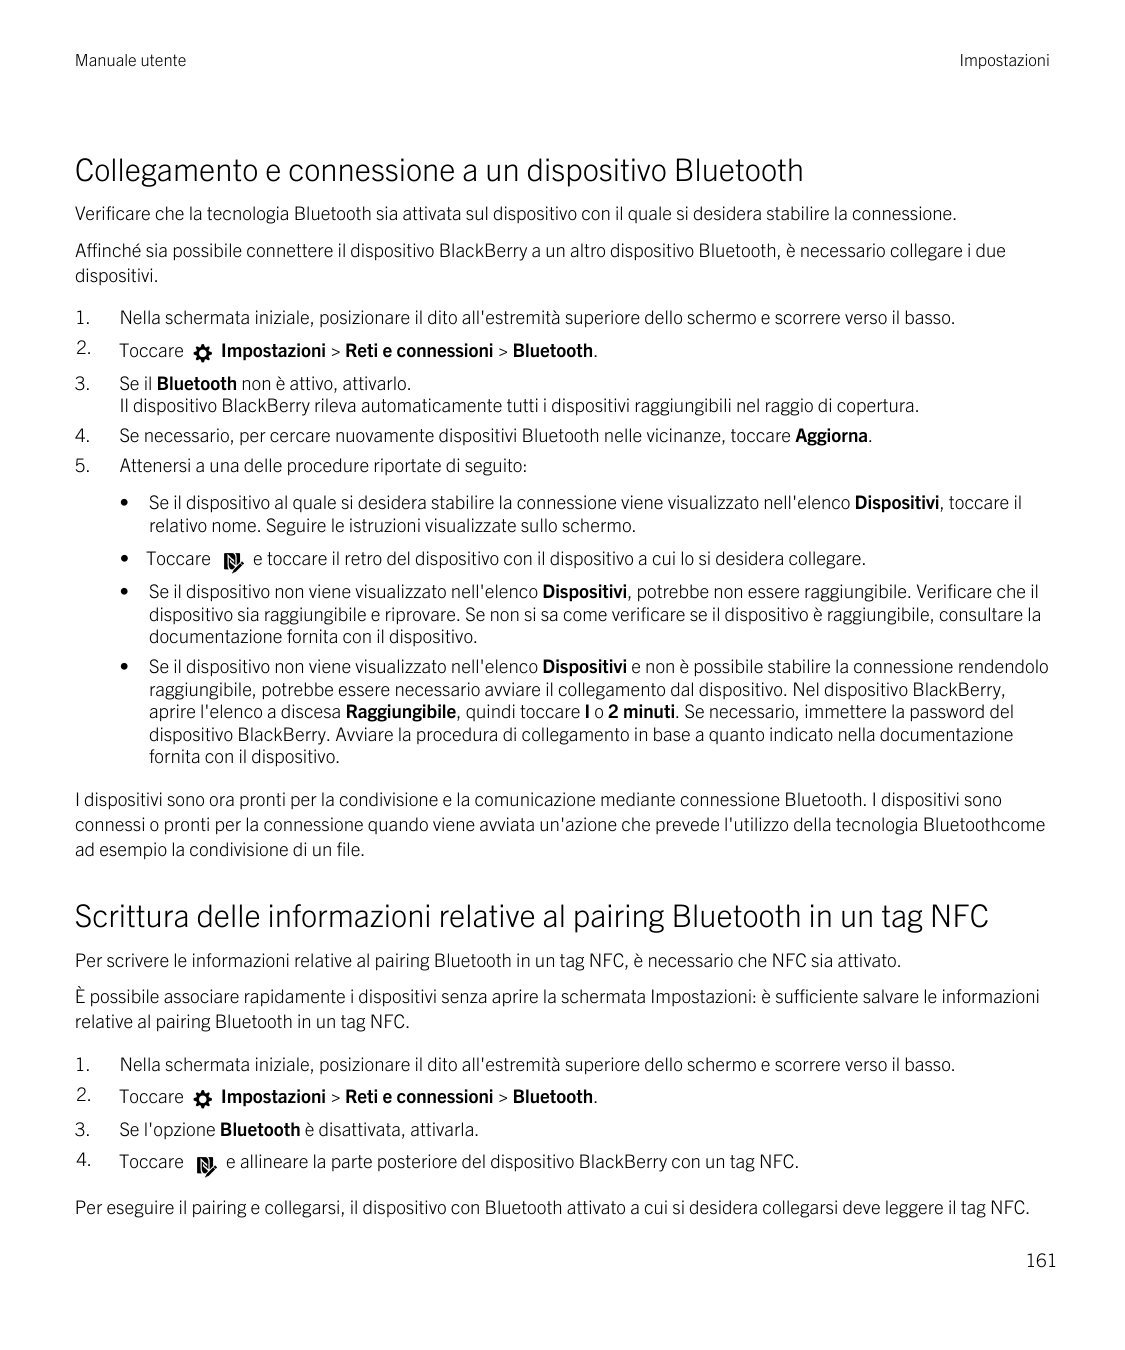 Manuale utenteImpostazioniCollegamento e connessione a un dispositivo BluetoothVerificare che la tecnologia Bluetooth sia attiva